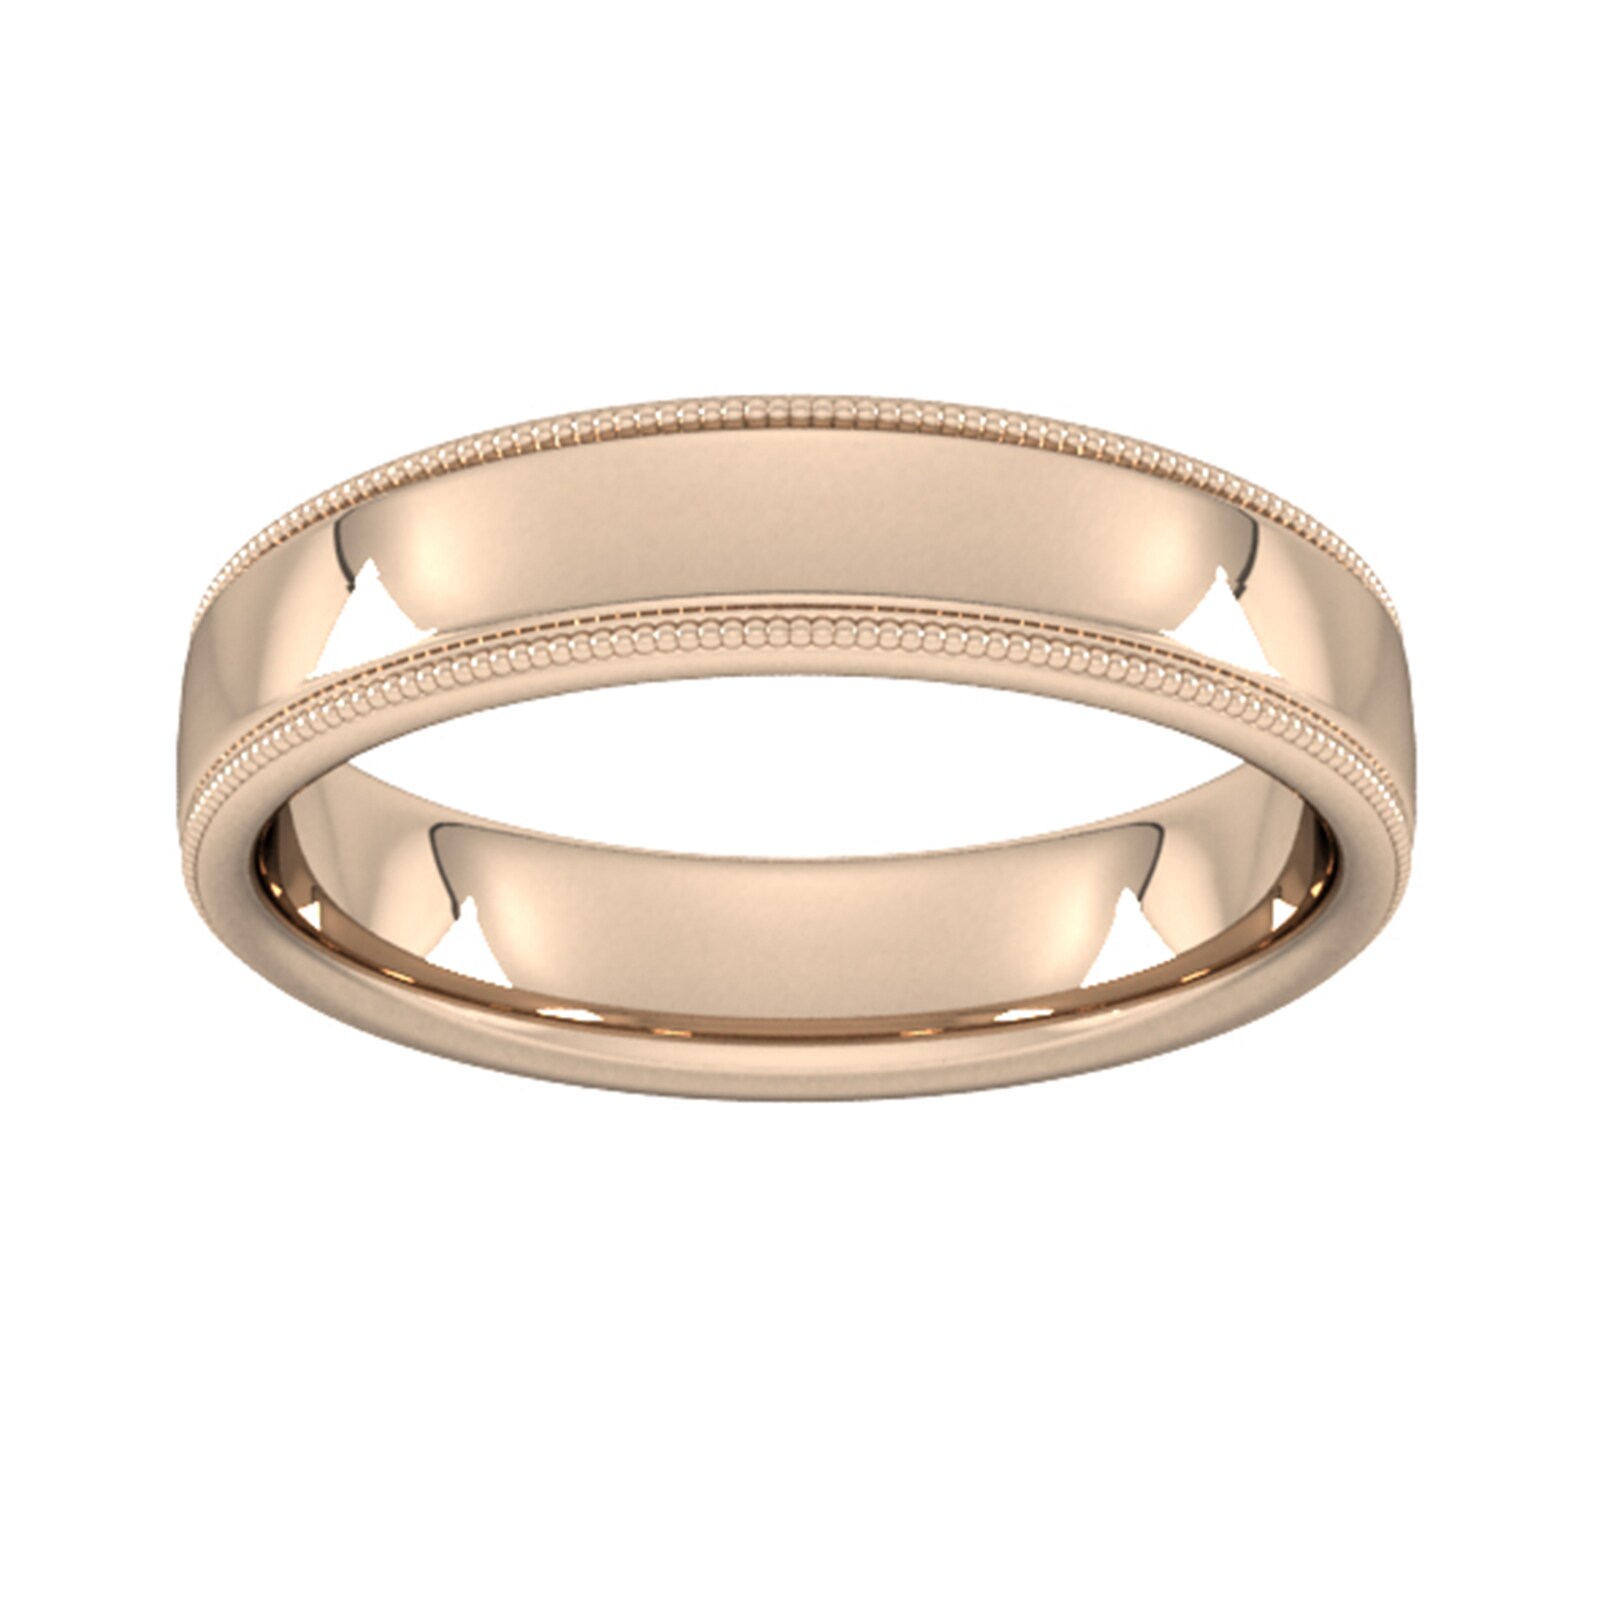 5mm Slight Court Standard Milgrain Edge Wedding Ring In 18 Carat Rose Gold - Ring Size R